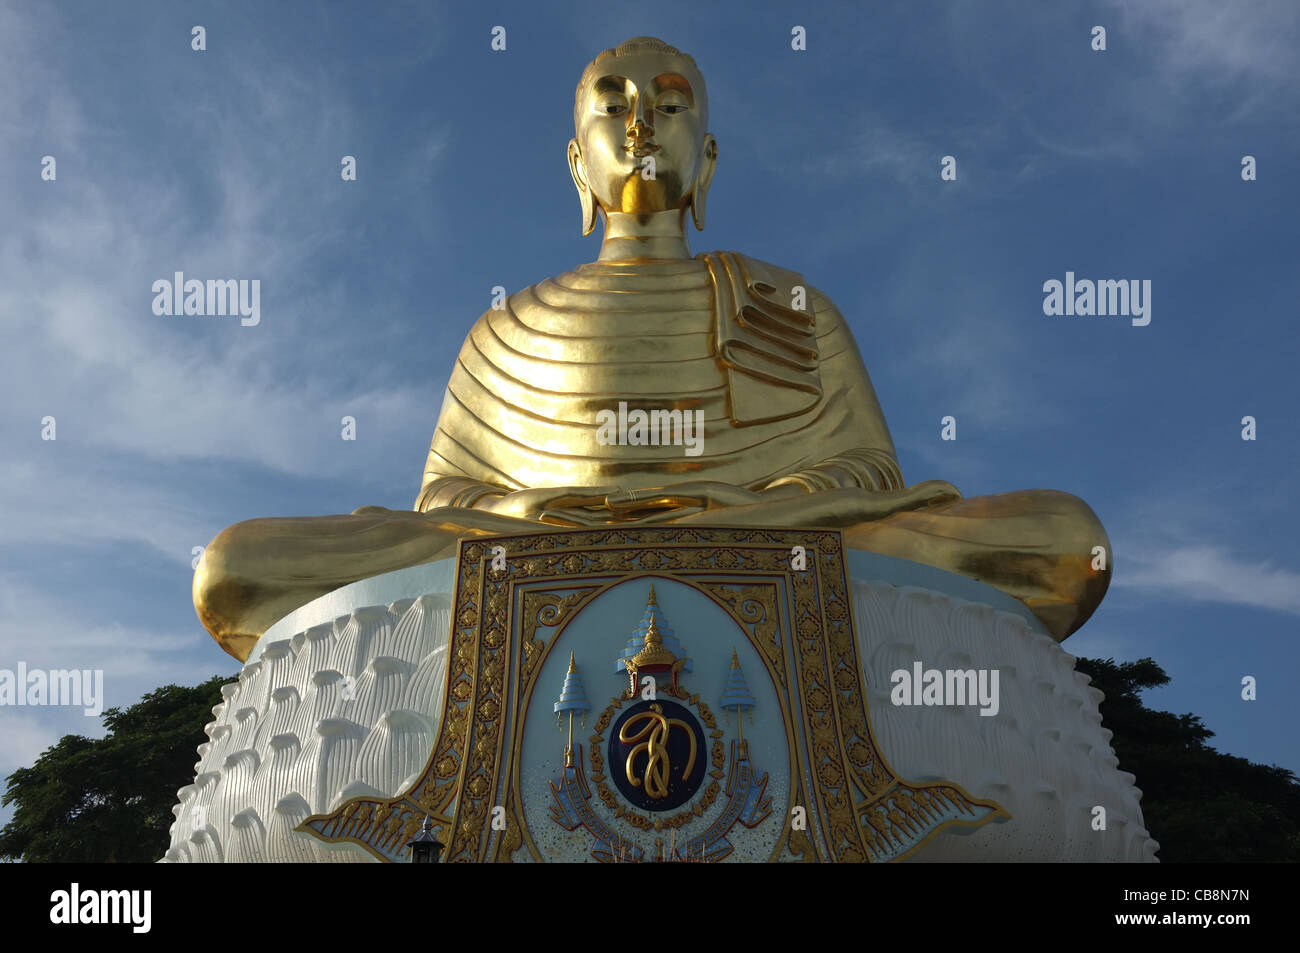 Une gigantesque statue d'or de Bouddha dans un temple bouddhiste sur une colline surplombant le golfe de Thaïlande. Banque D'Images